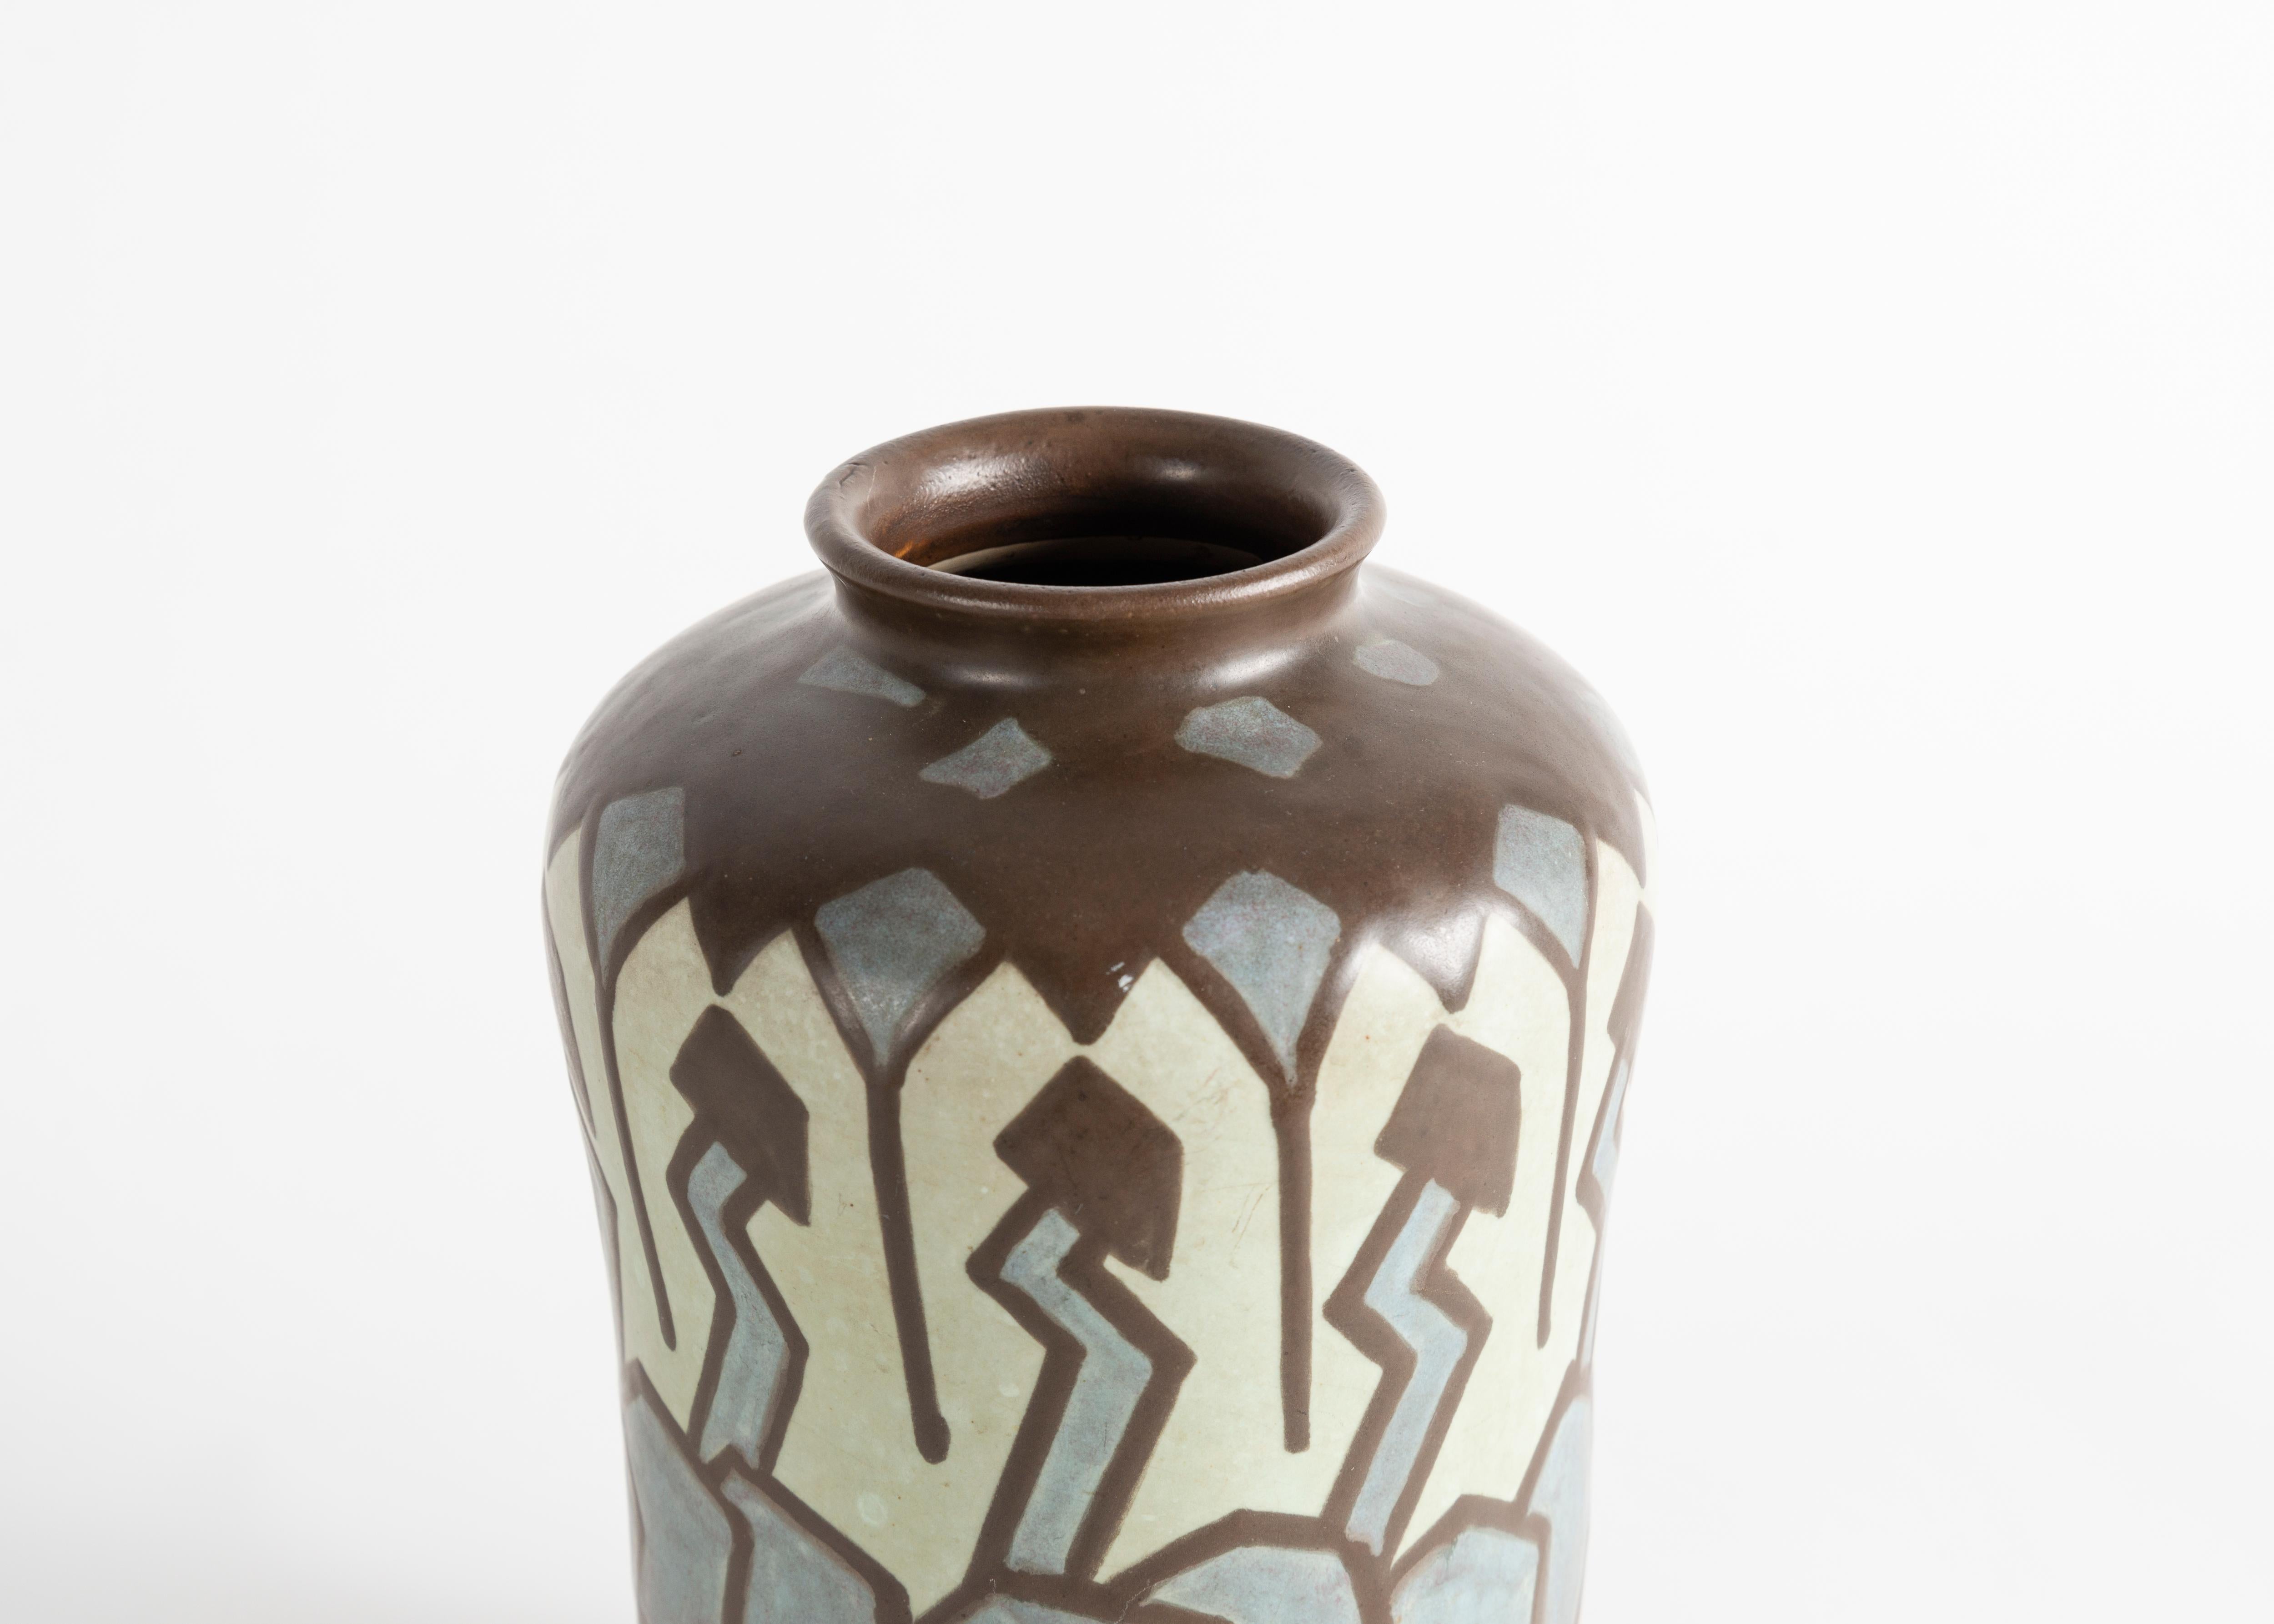 Vase aus Steingut im Art déco-Stil von Villeroy & Boch. Luxemburg, um 1930.

Unterzeichnet: V&B
Nummeriert: 313 & 1535.